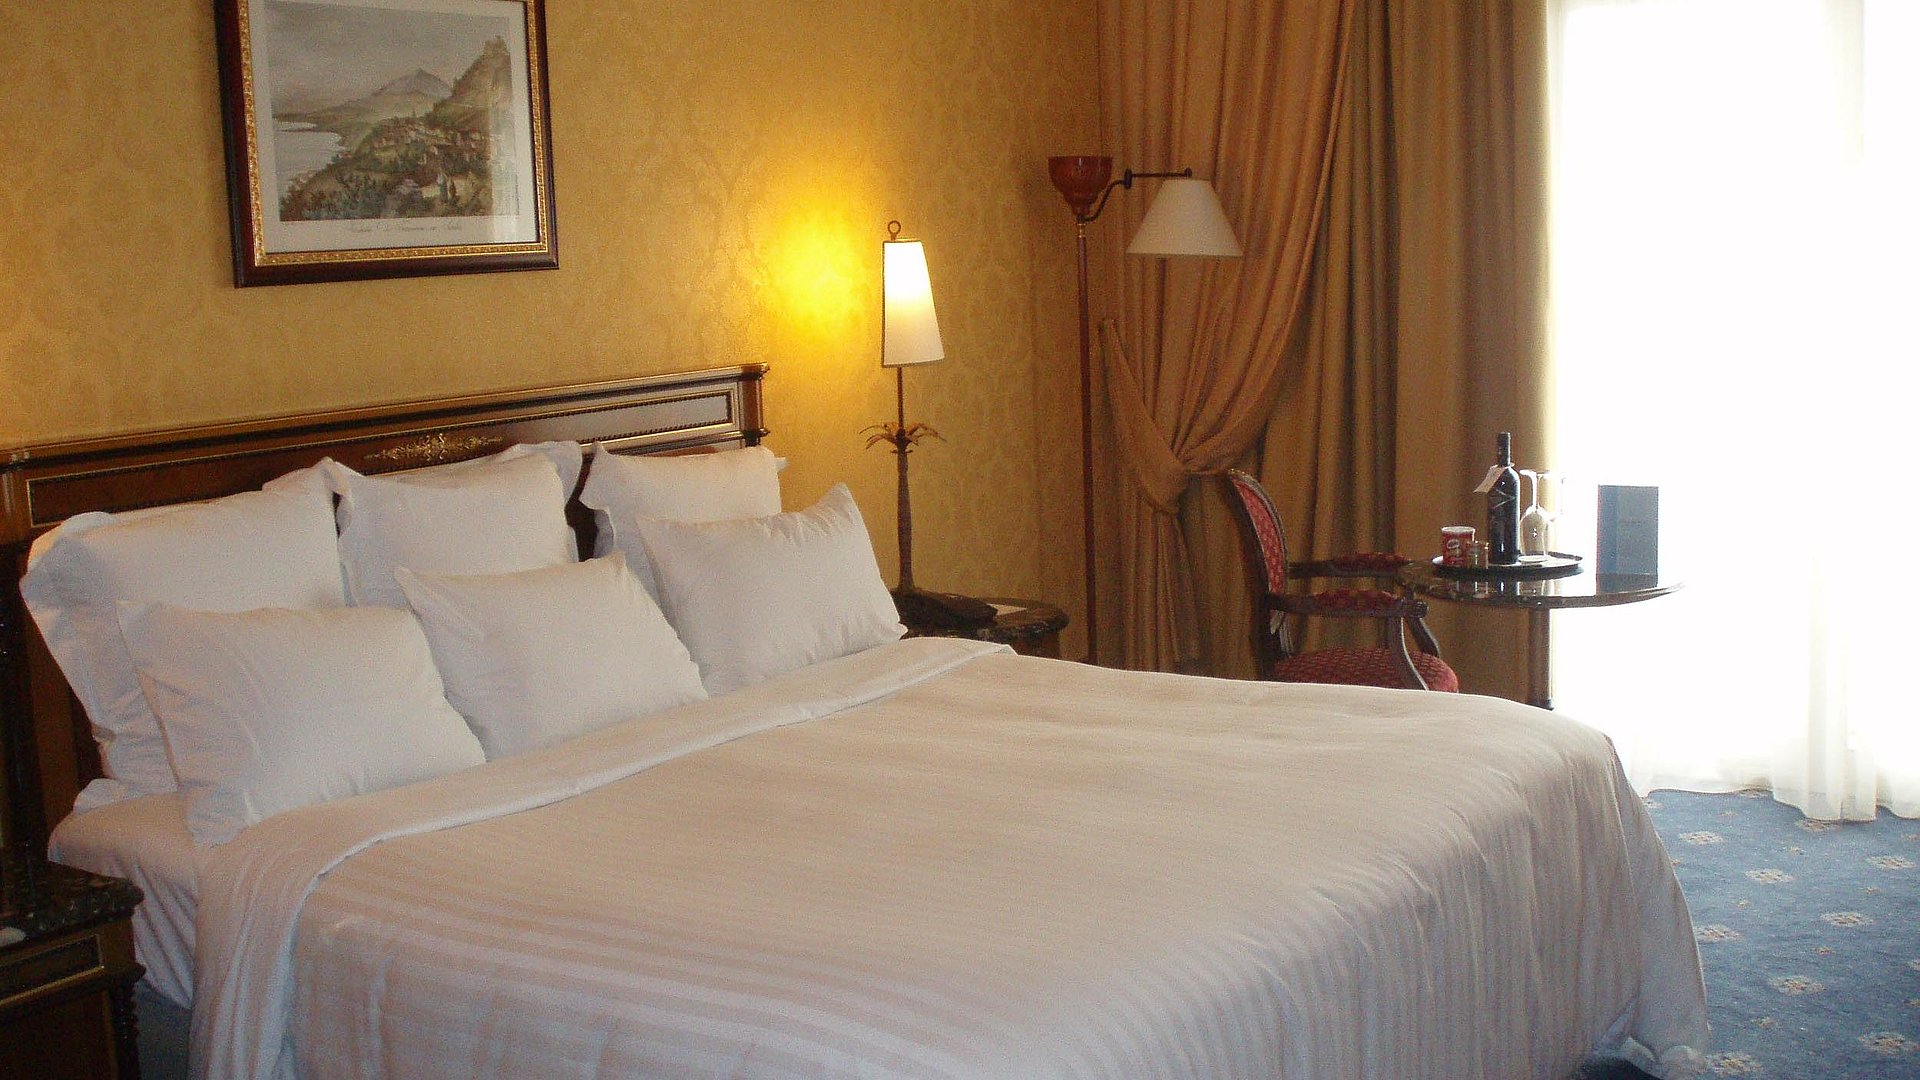 Hotels für Gruppen im Oberallgäu - sehr ordentliches Hotelzimmer im Antik-Stil mit warmer Nachttischlampe und Lichteinfall von außen durch weiße Gardinen